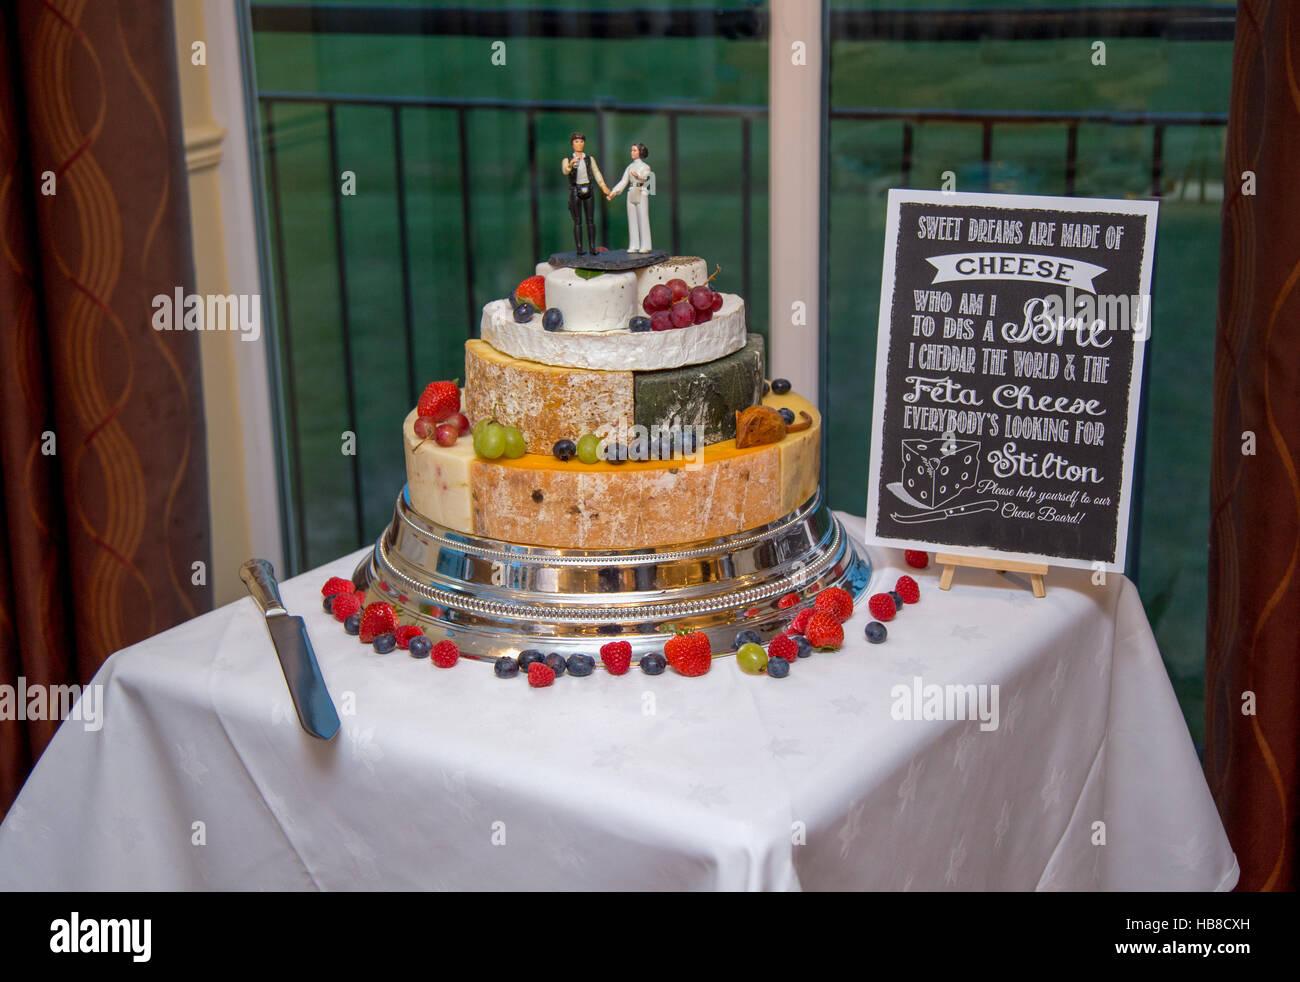 Gâteau de mariage faite de fromage, décoré avec des fruits et de la guerre des étoiles des chiffres sur le haut. Banque D'Images